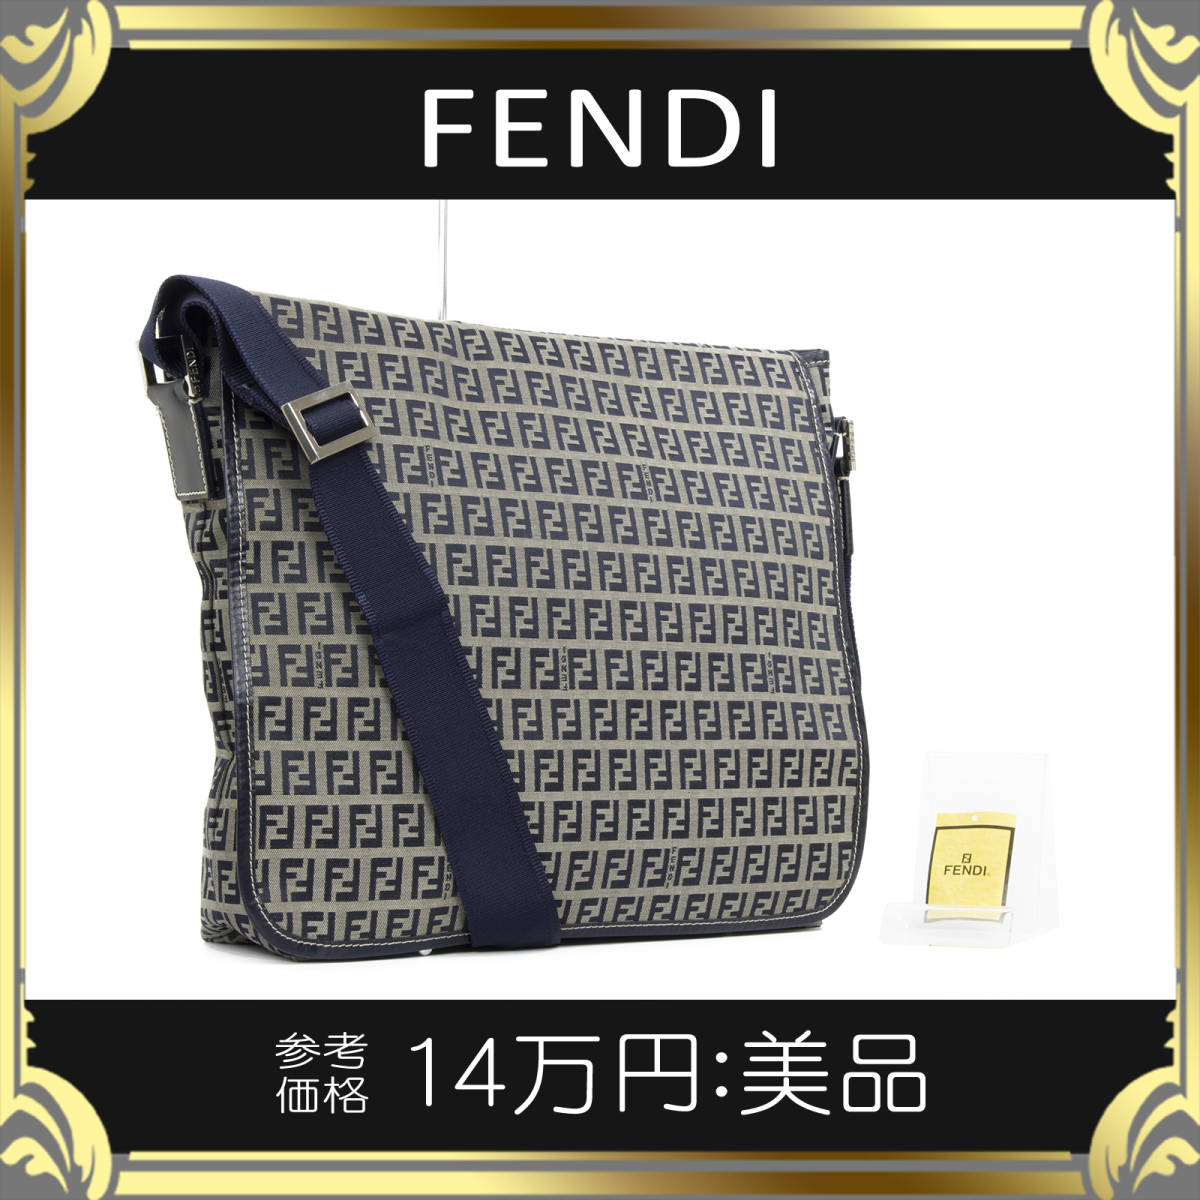 全額返金保証・送料無料】FENDI/フェンディのショルダーバッグ